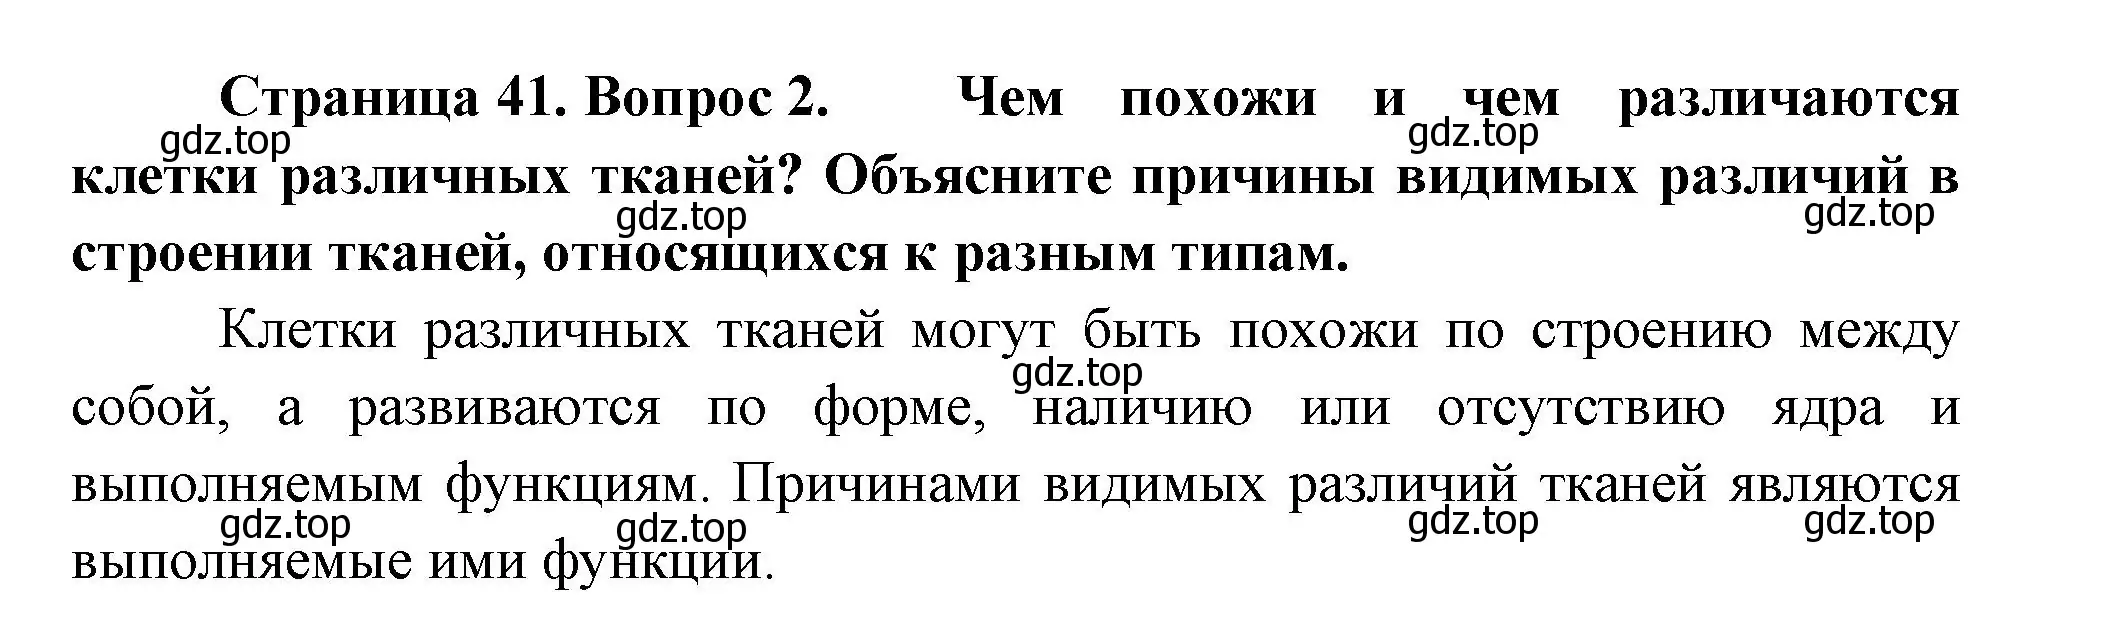 Решение номер 2 (страница 41) гдз по биологии 9 класс Пасечник, Каменский, учебник